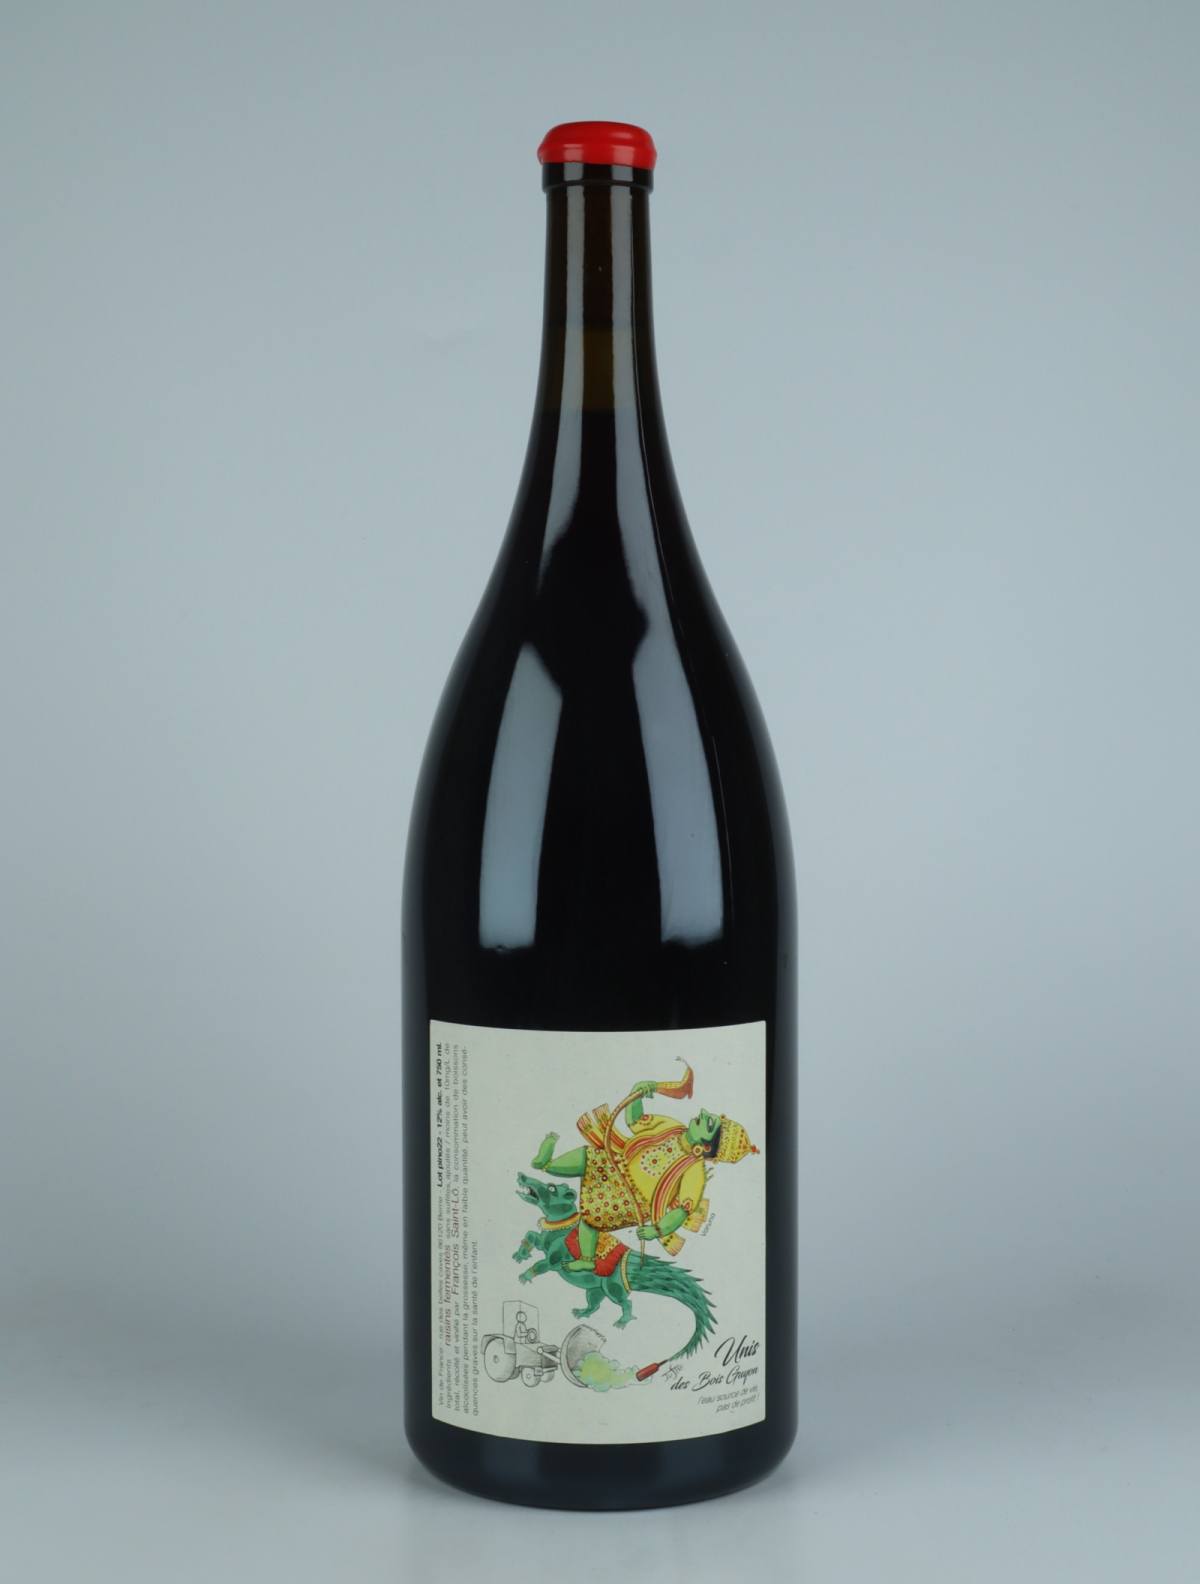 A bottle 2022 Unis des Bois Guyon - Magnum Red wine from François Saint-Lô, Loire in France